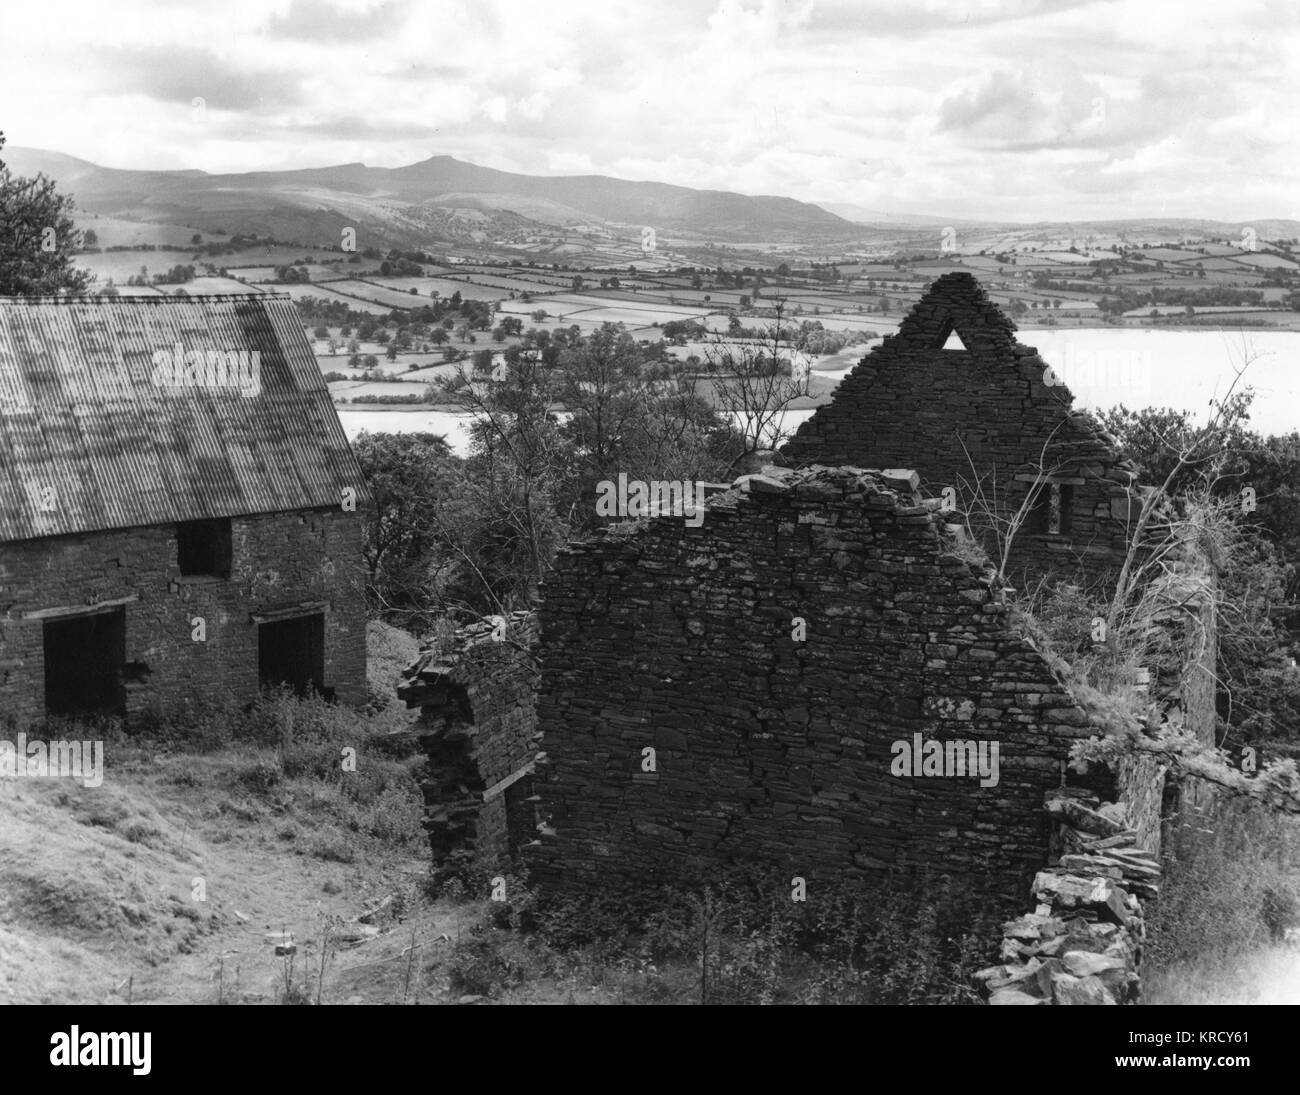 Ein verfallenes alten walisischen Bauernhaus mit Panoramablick auf See und Llangorse, Brecon Beacons Breconshire, Wales. Datum: 1960 Stockfoto